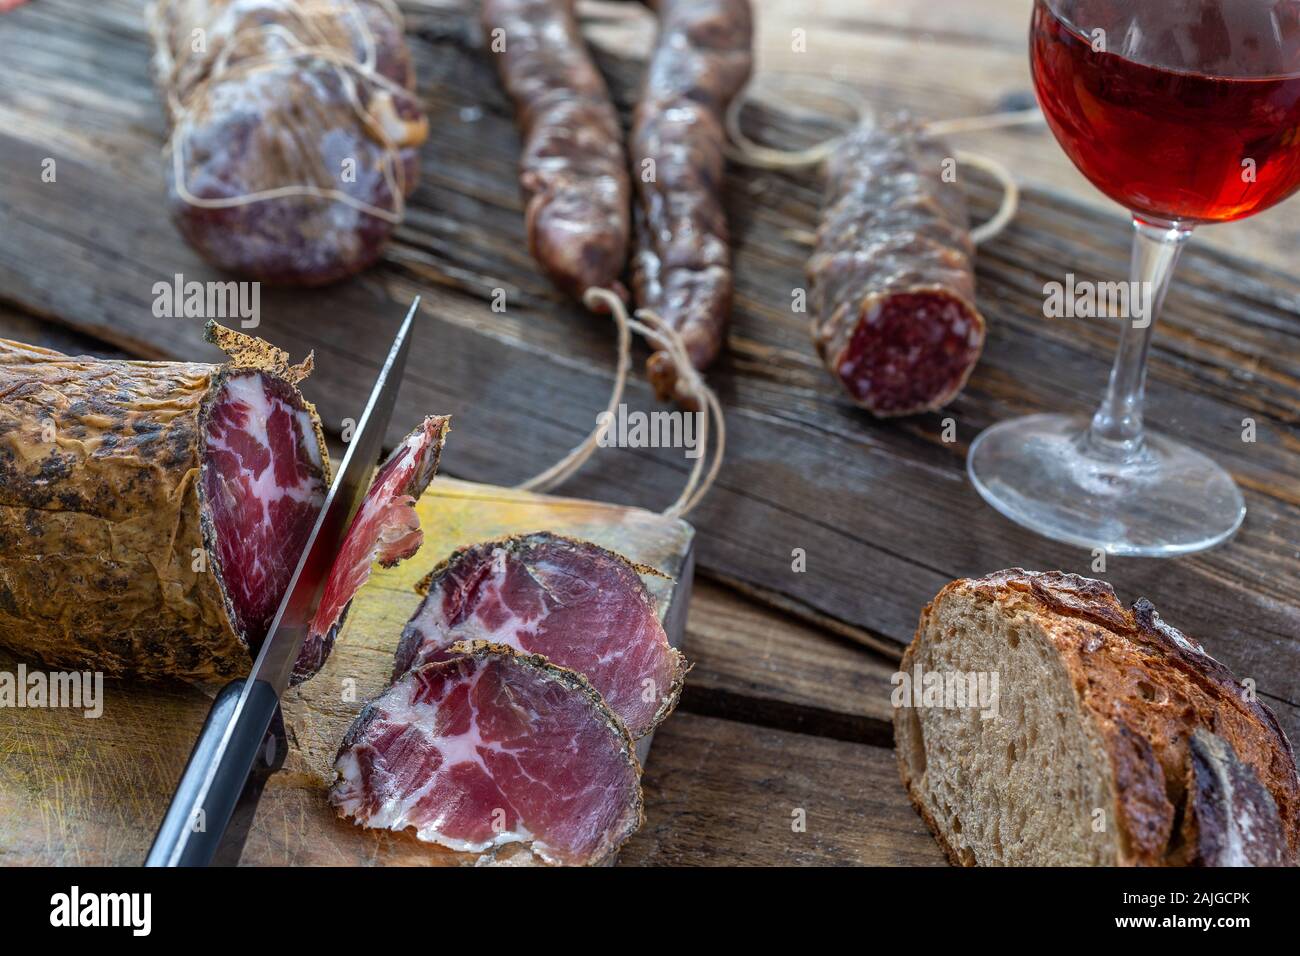 Korsische wild Schwein Feinkost und Käse in Korsika Frankreich auf hölzernen Hintergrund mit Glas Rot korsischen Wein Stockfoto